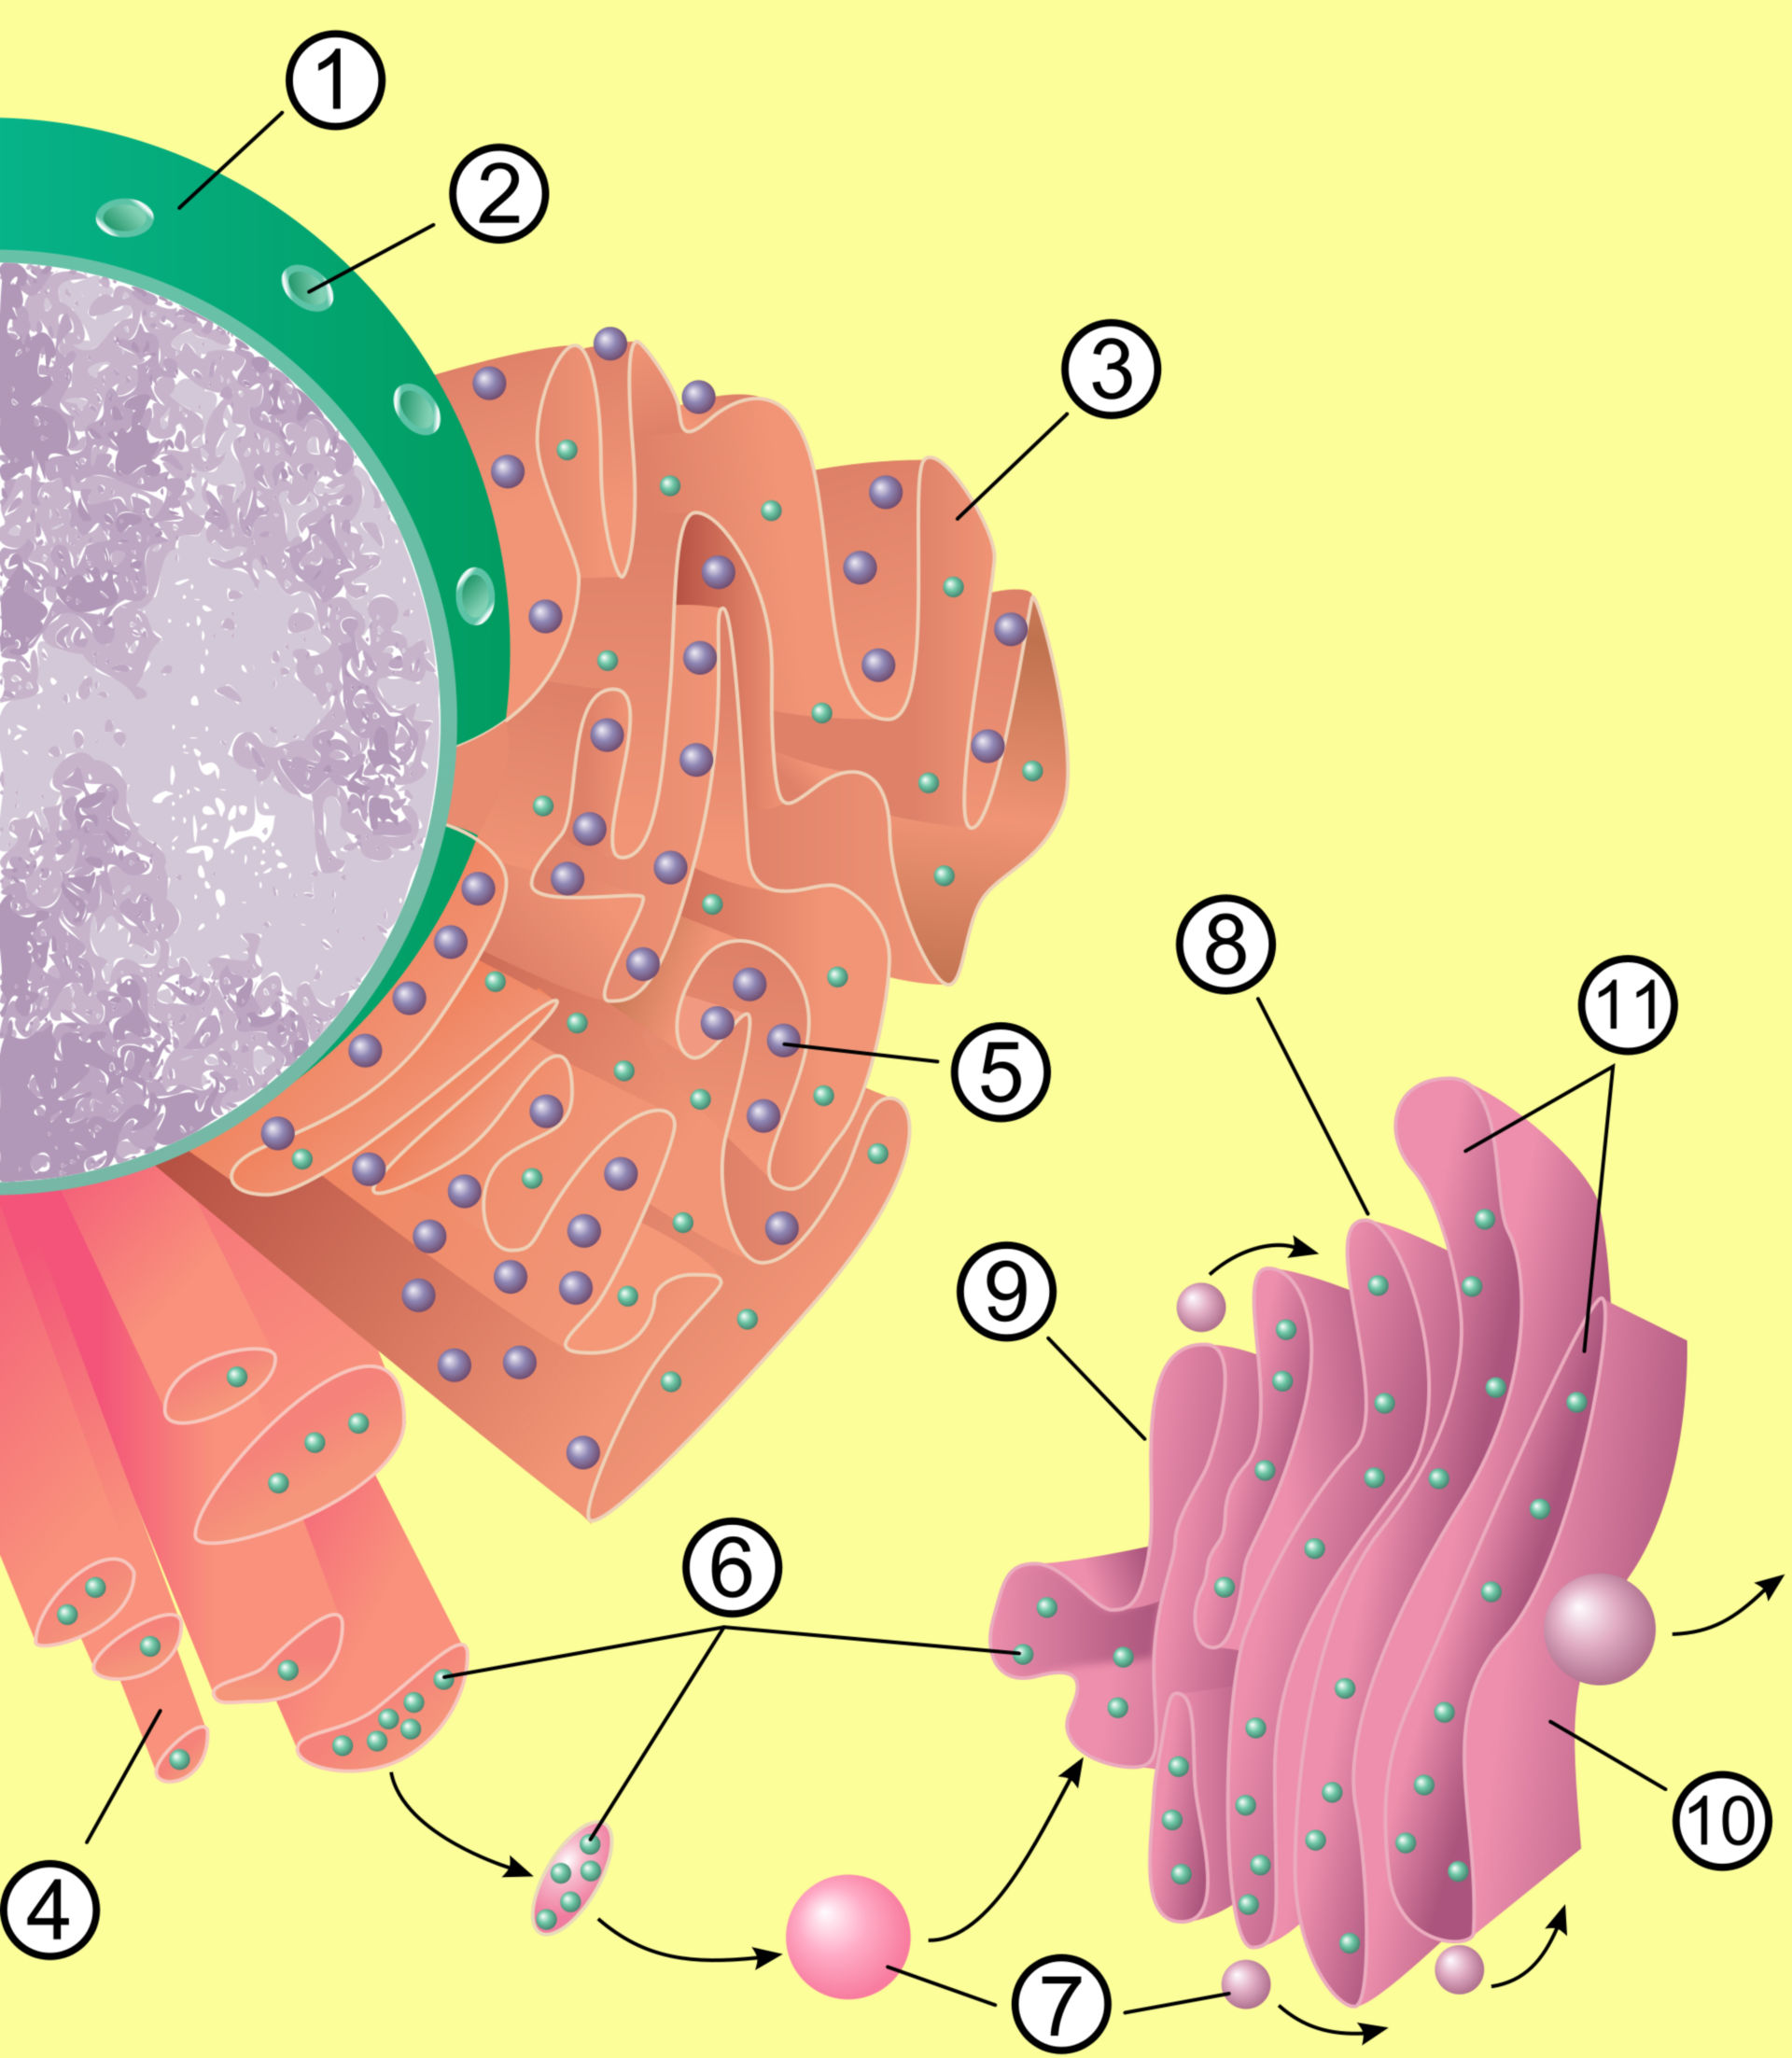 Zellkern, Endoplasmatisches Retikulum und Golgi-Apparat